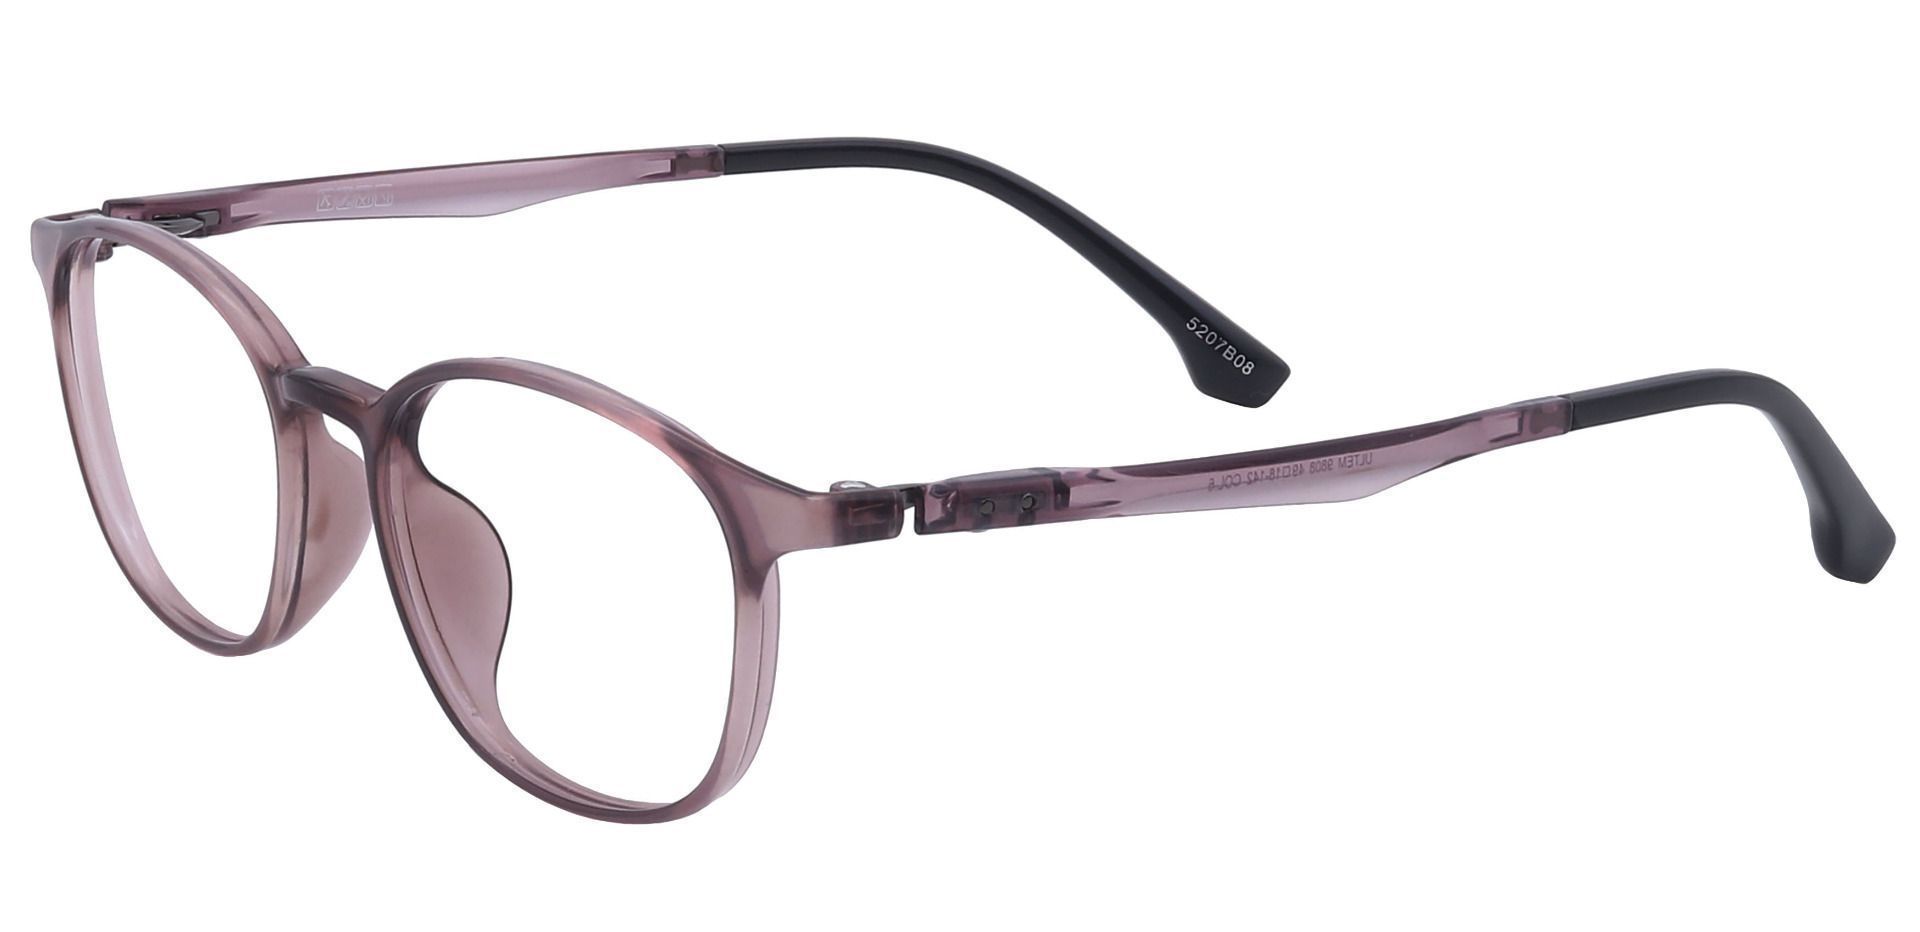 Shannon Oval Prescription Glasses - Brown